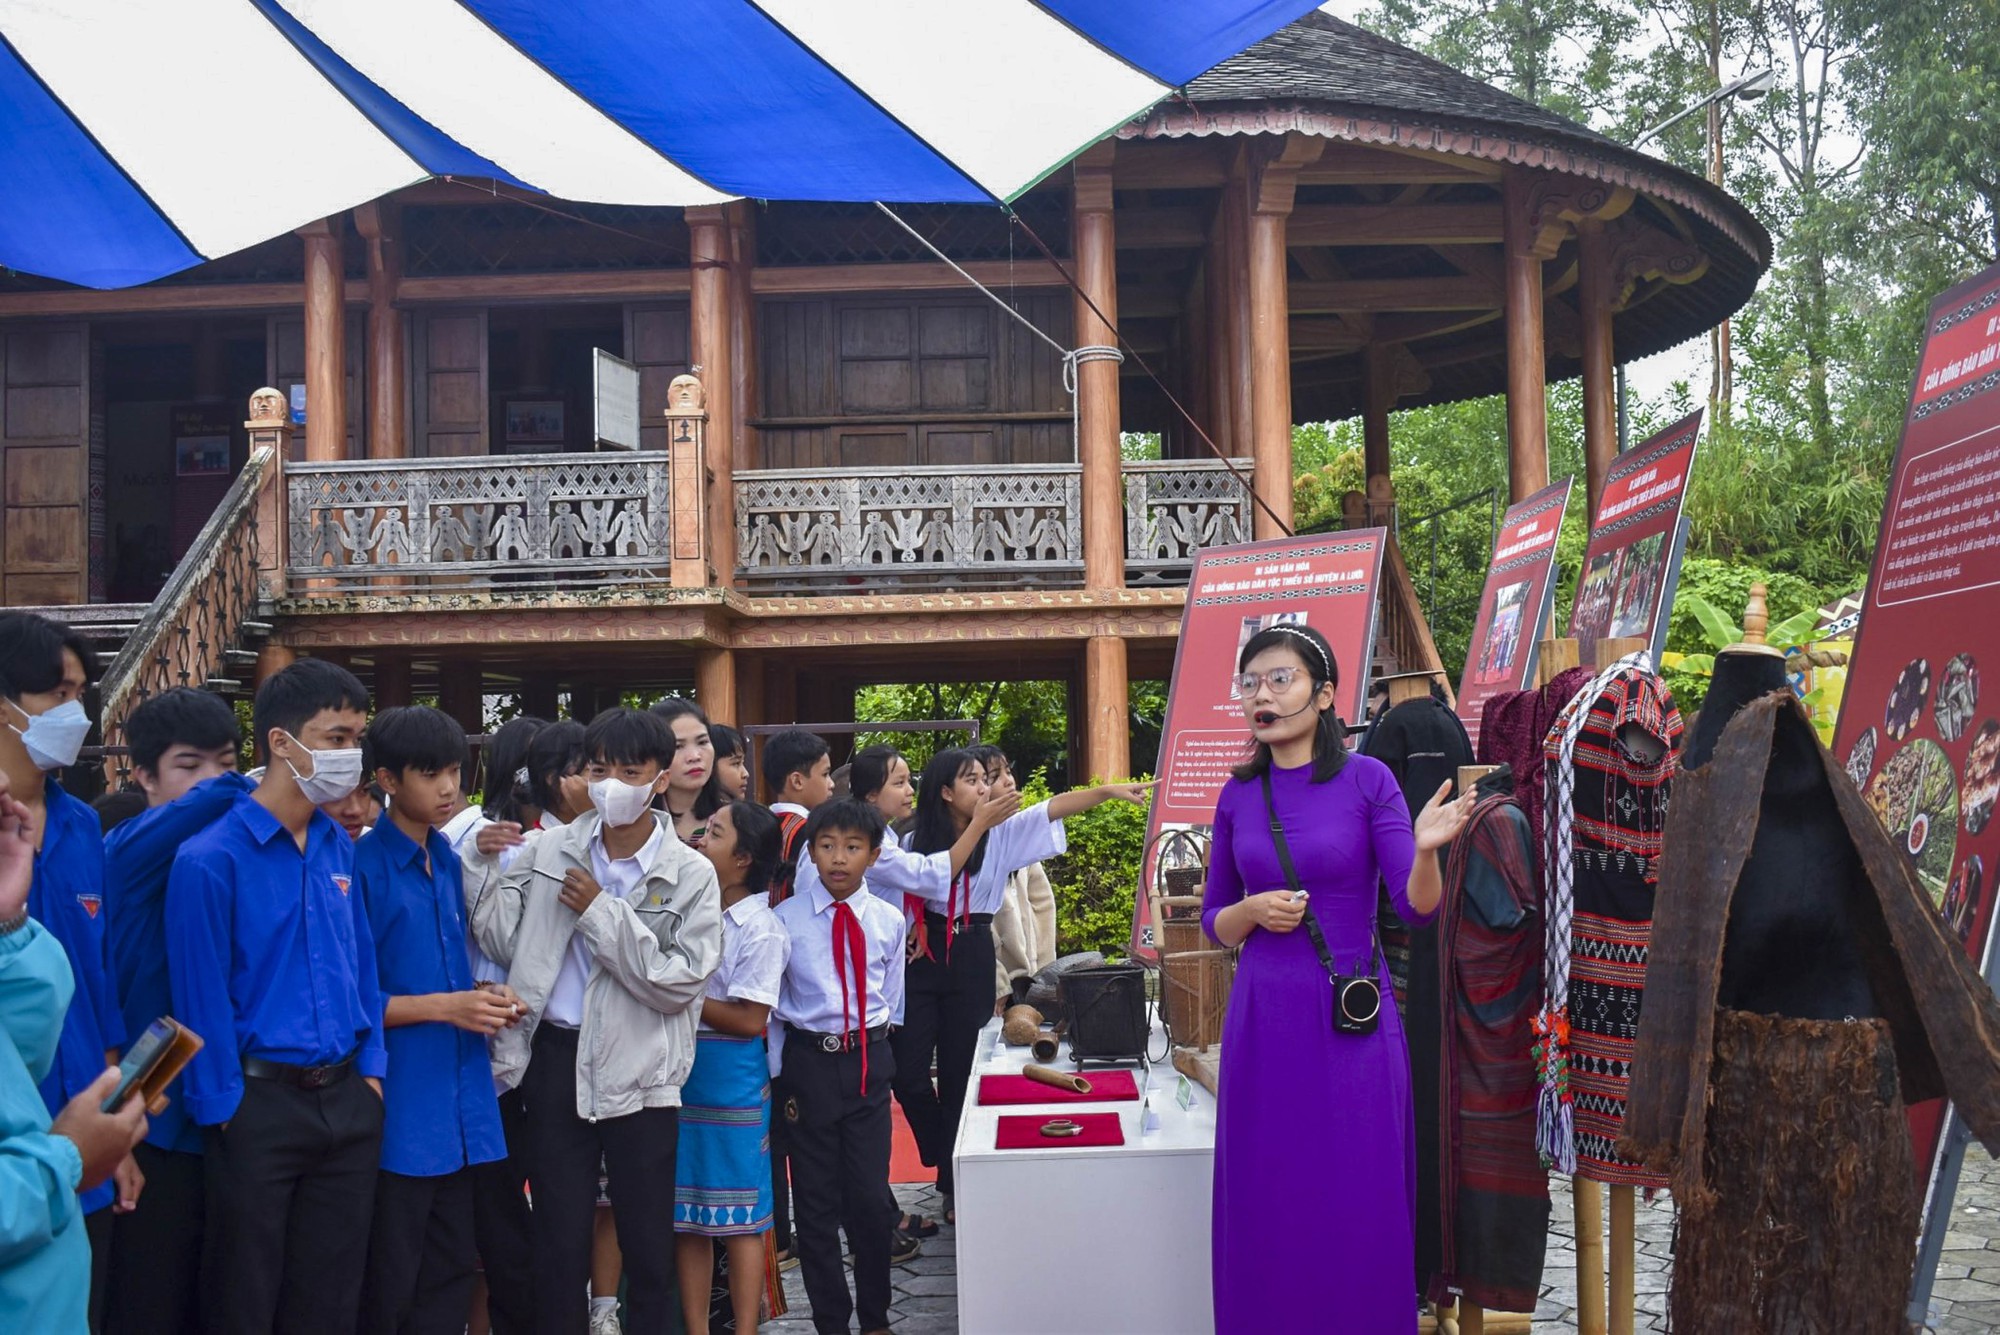 Miền sơn cước phía Tây tỉnh Thừa Thiên Huế, điểm đến cho những du khách thích sự khám phá - Ảnh 5.